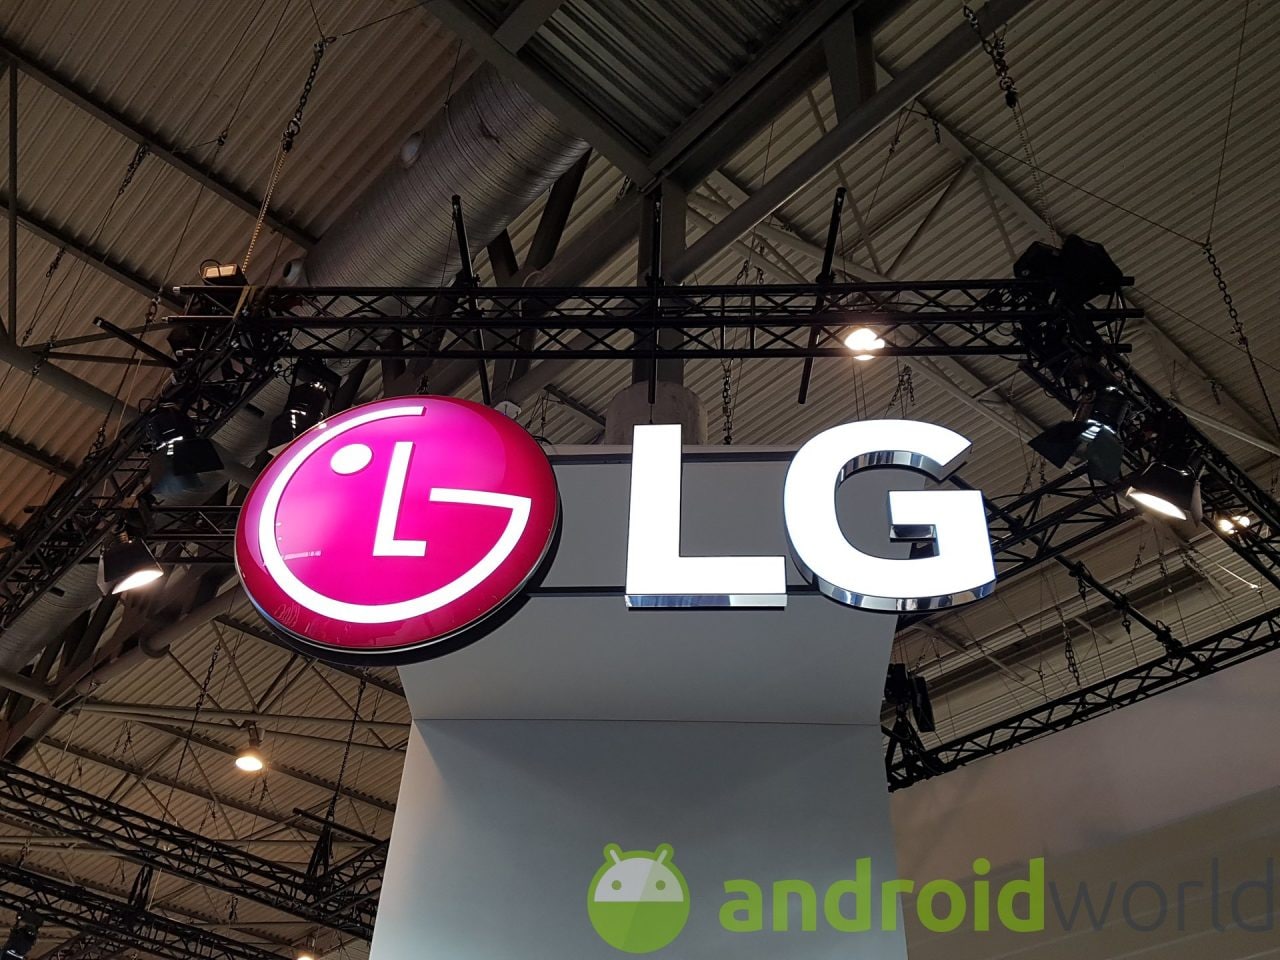 Il prossimo smartphone entry level di LG potrebbe chiamarsi K9s